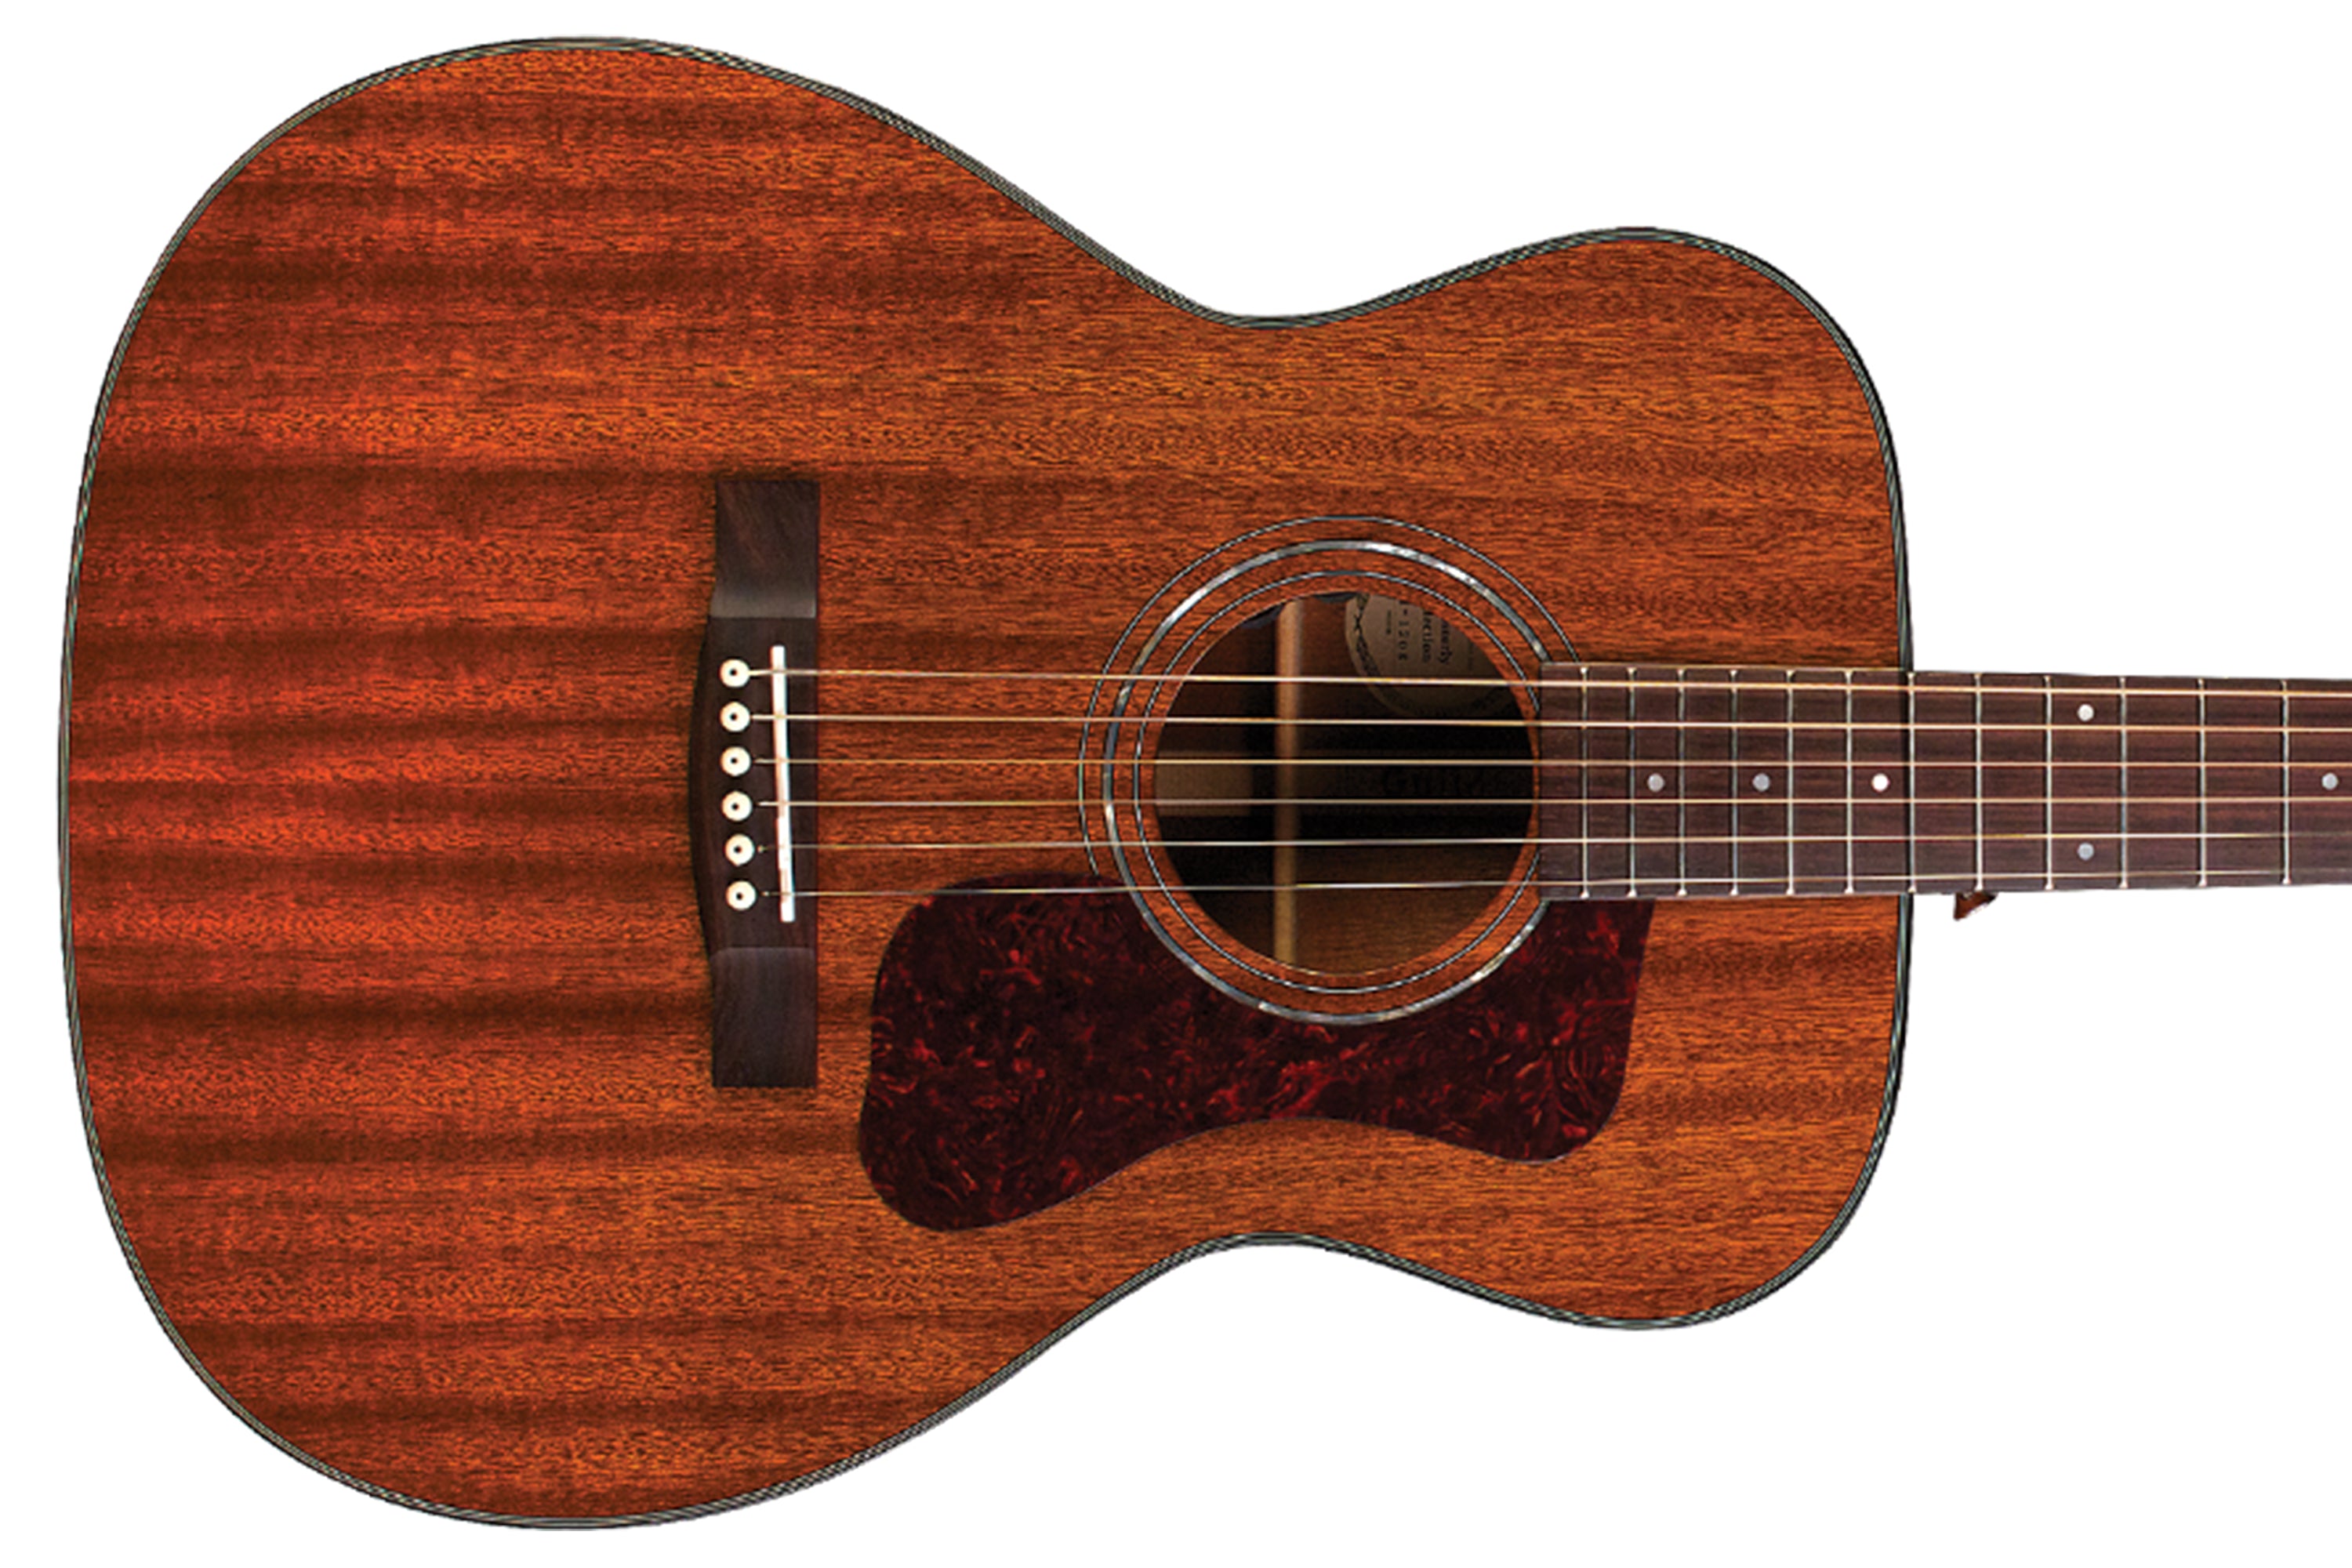 Guild OM-120 Acoustic Guitar